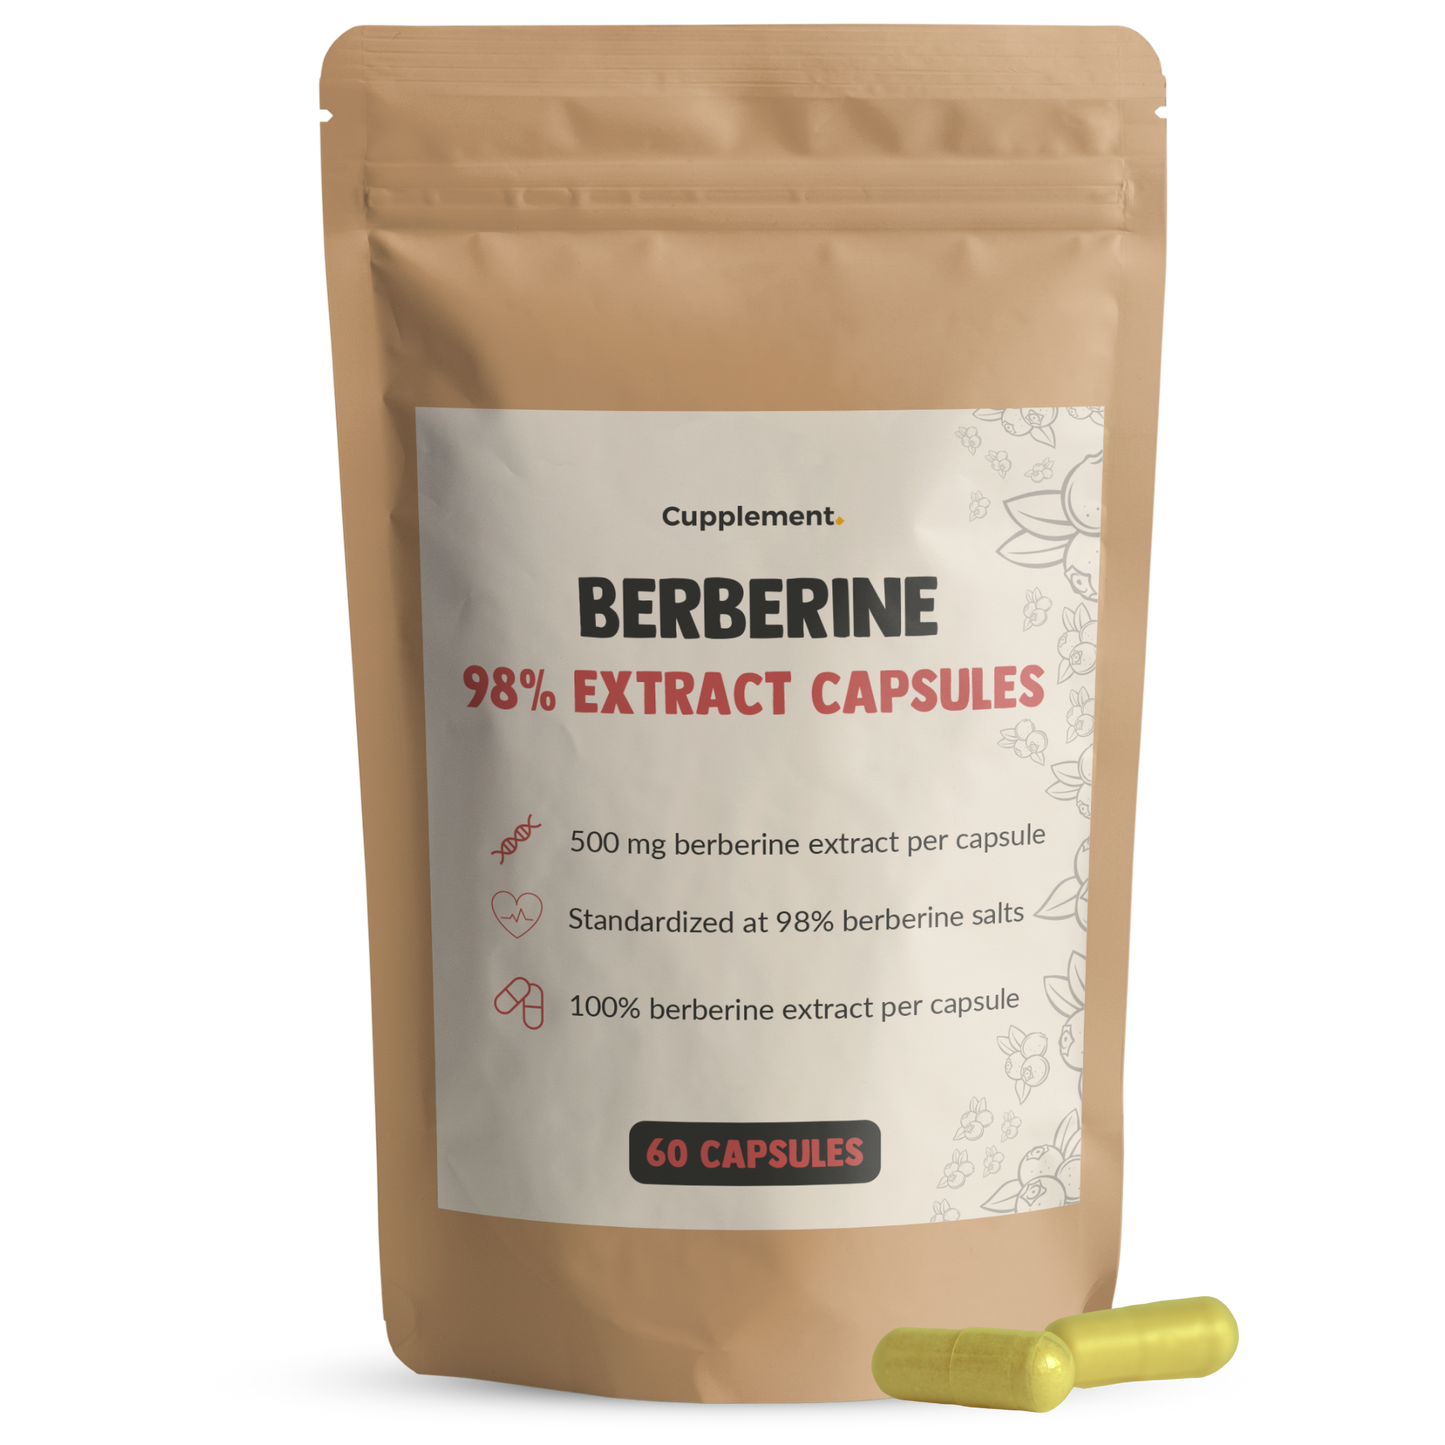 Berberine Capsules